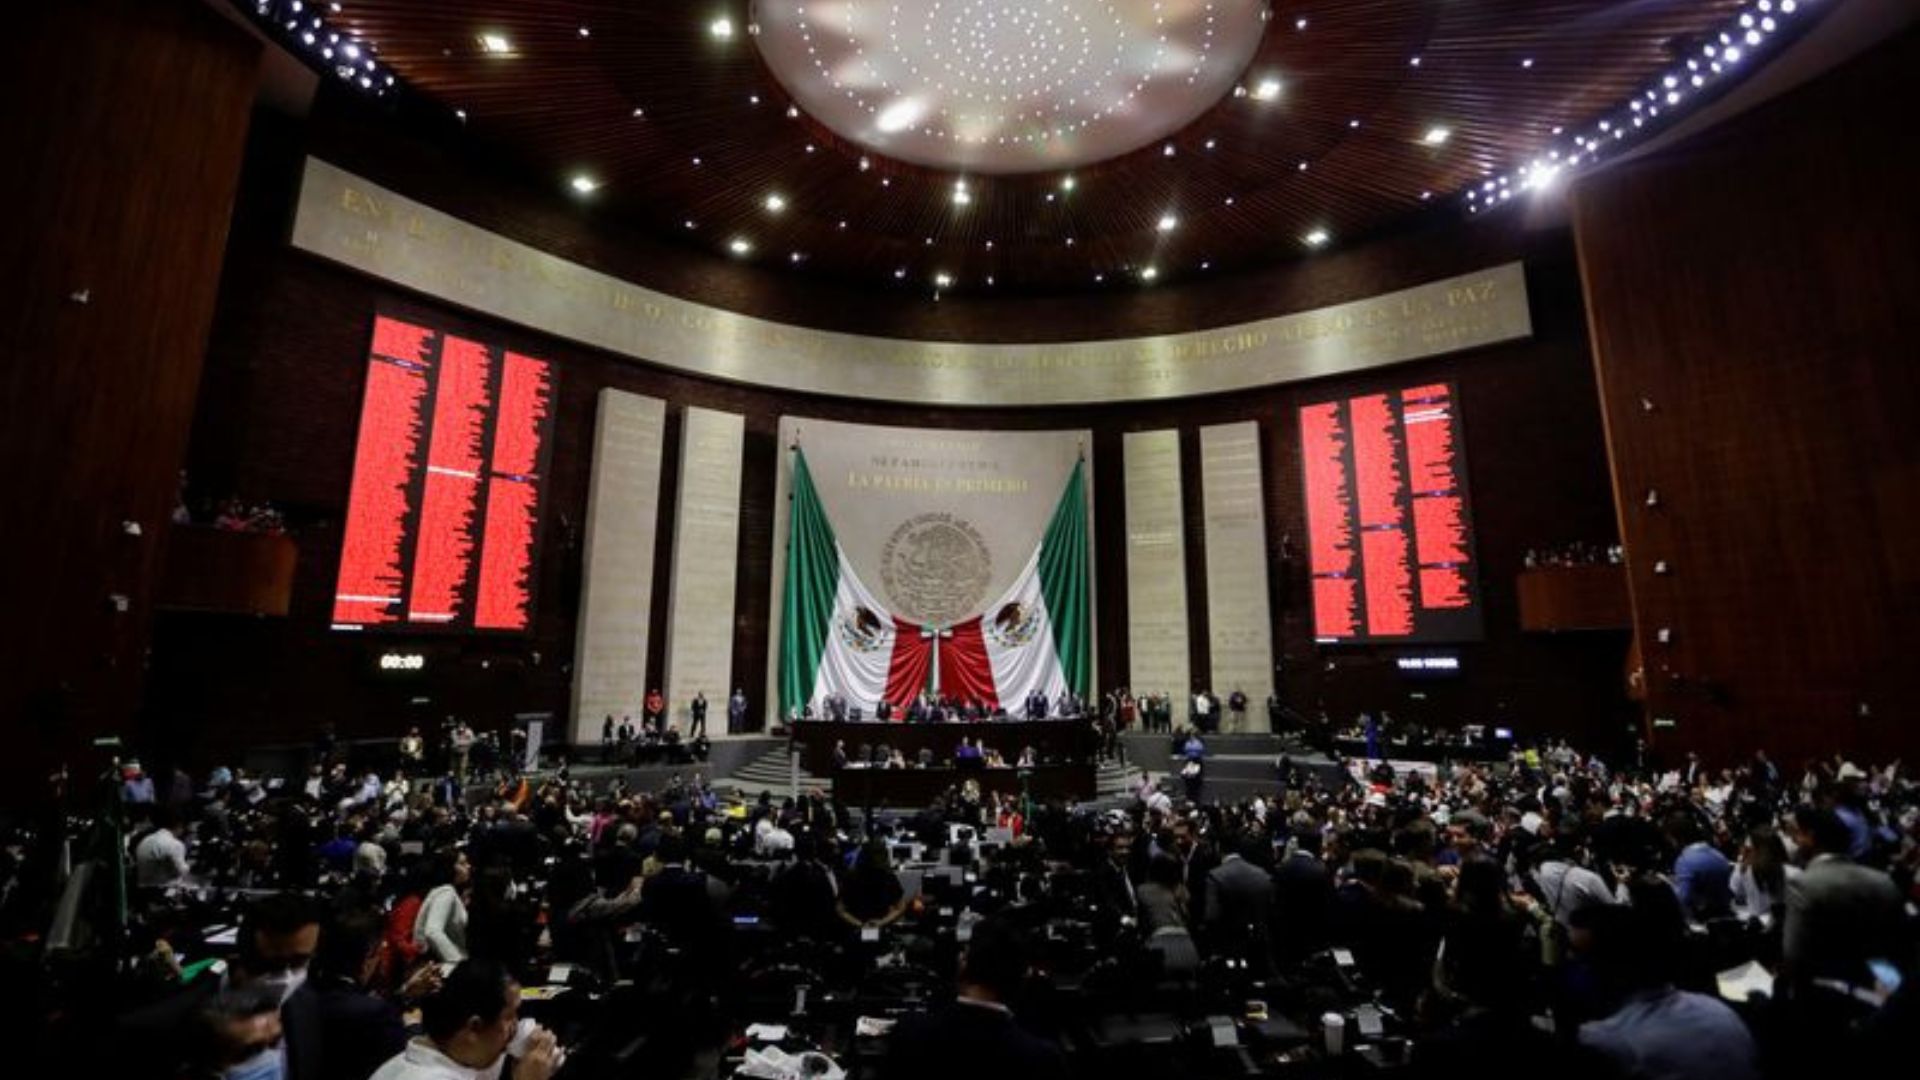 Cuál es el proyecto que contribuye a la transparencia en el Congreso de México